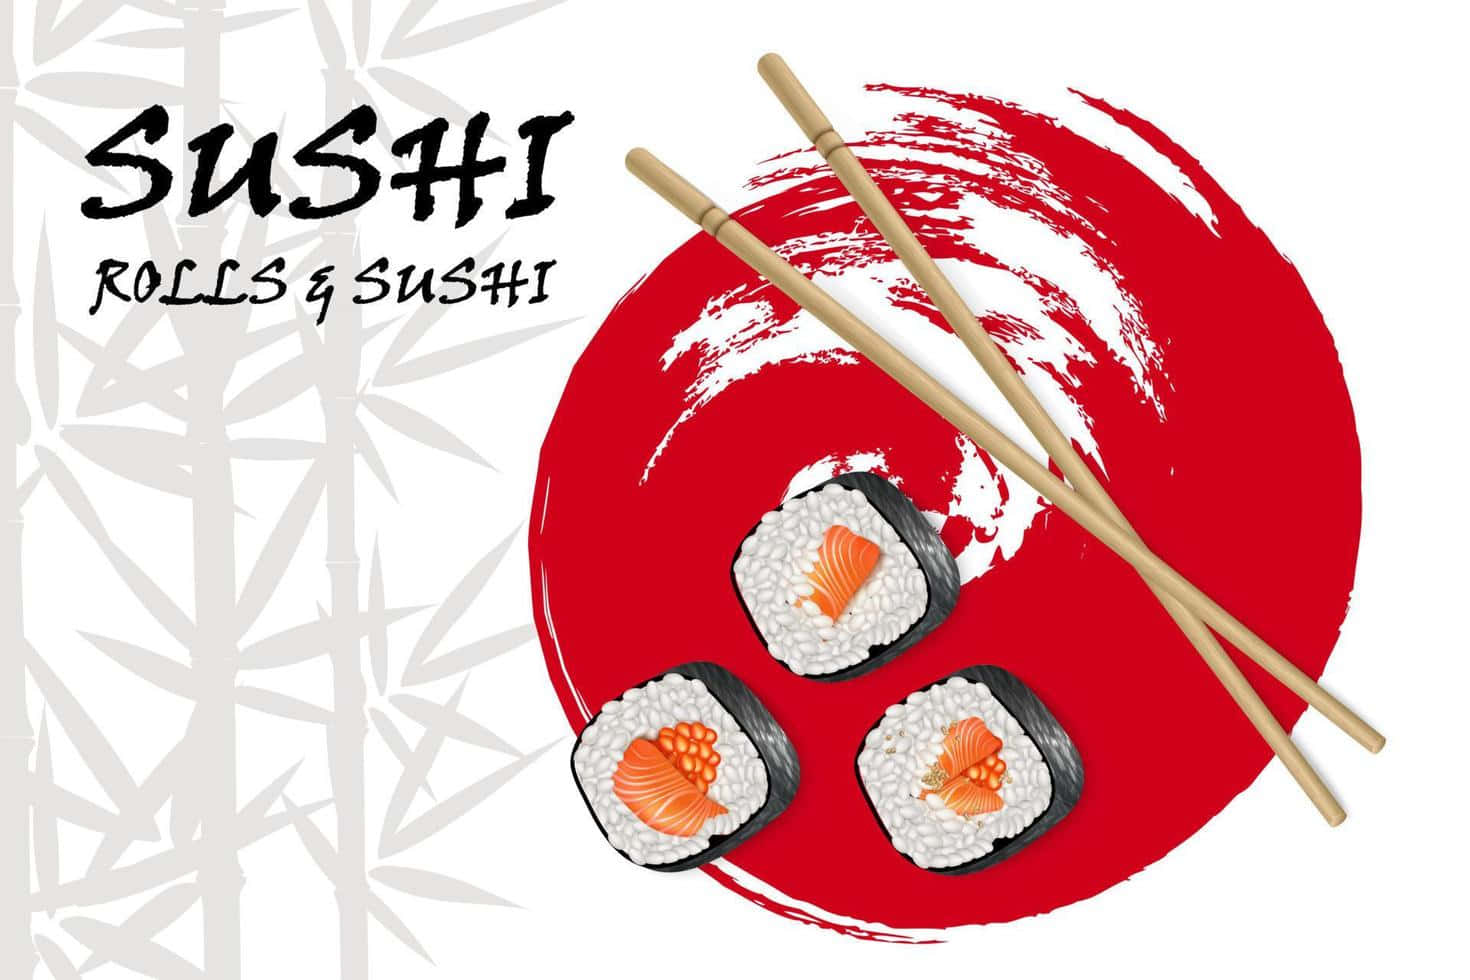 Sushi Platter Delight